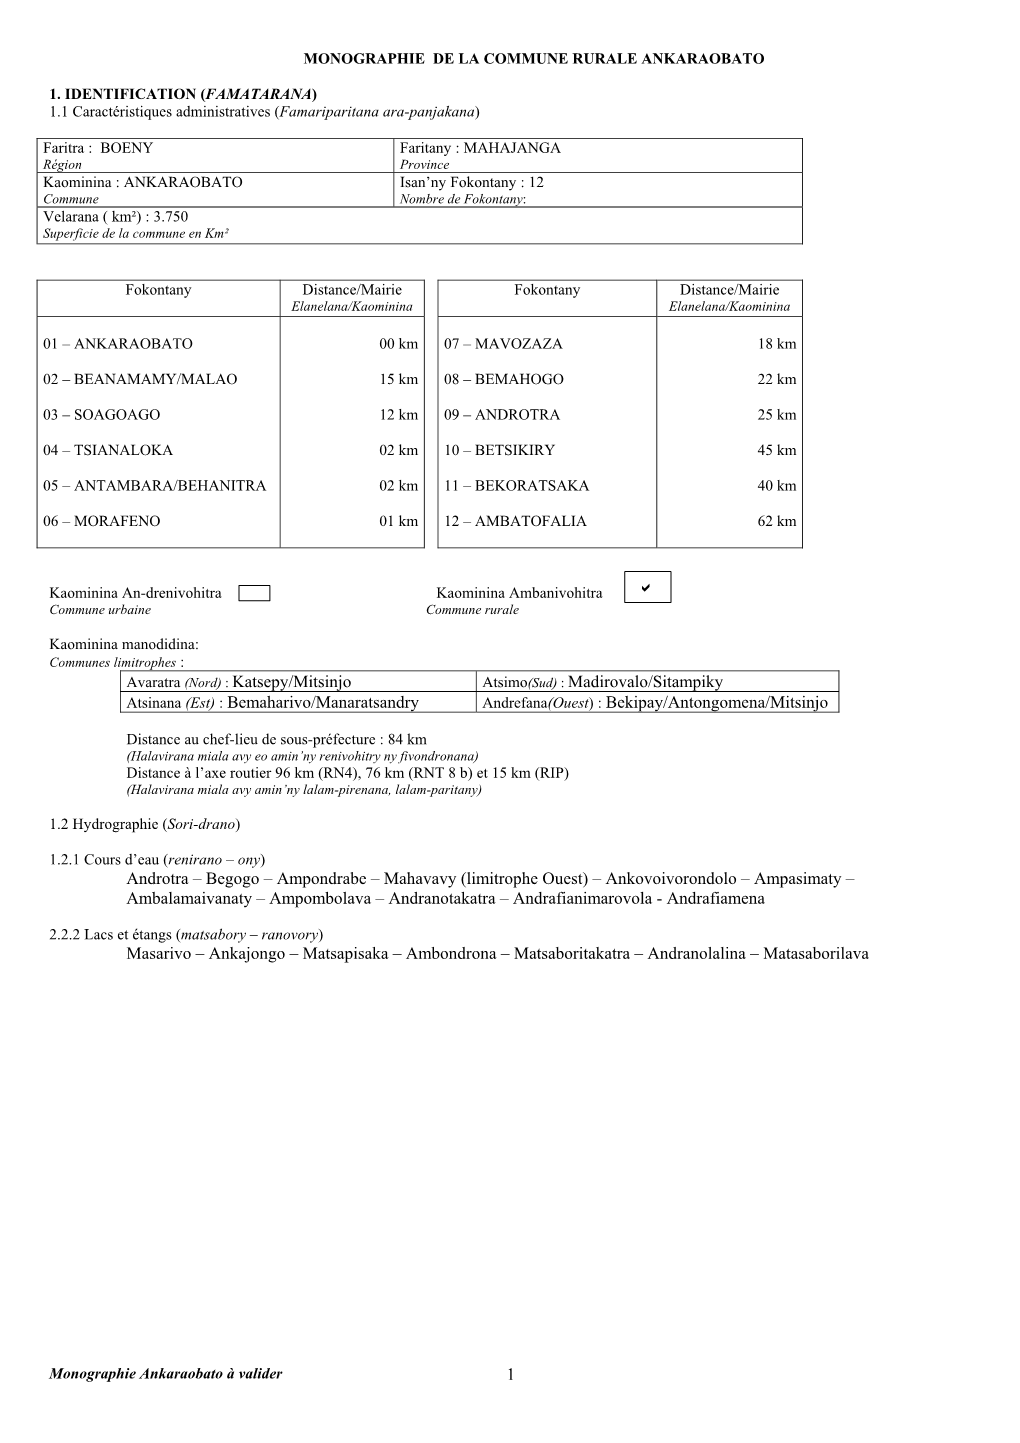 Katsepy/Mitsinjo Atsimo(Sud) : Madirovalo/Sitampiky Atsinana (Est) : Bemaharivo/Manaratsandry Andrefana(Ouest) : Bekipay/Antongomena/Mitsinjo